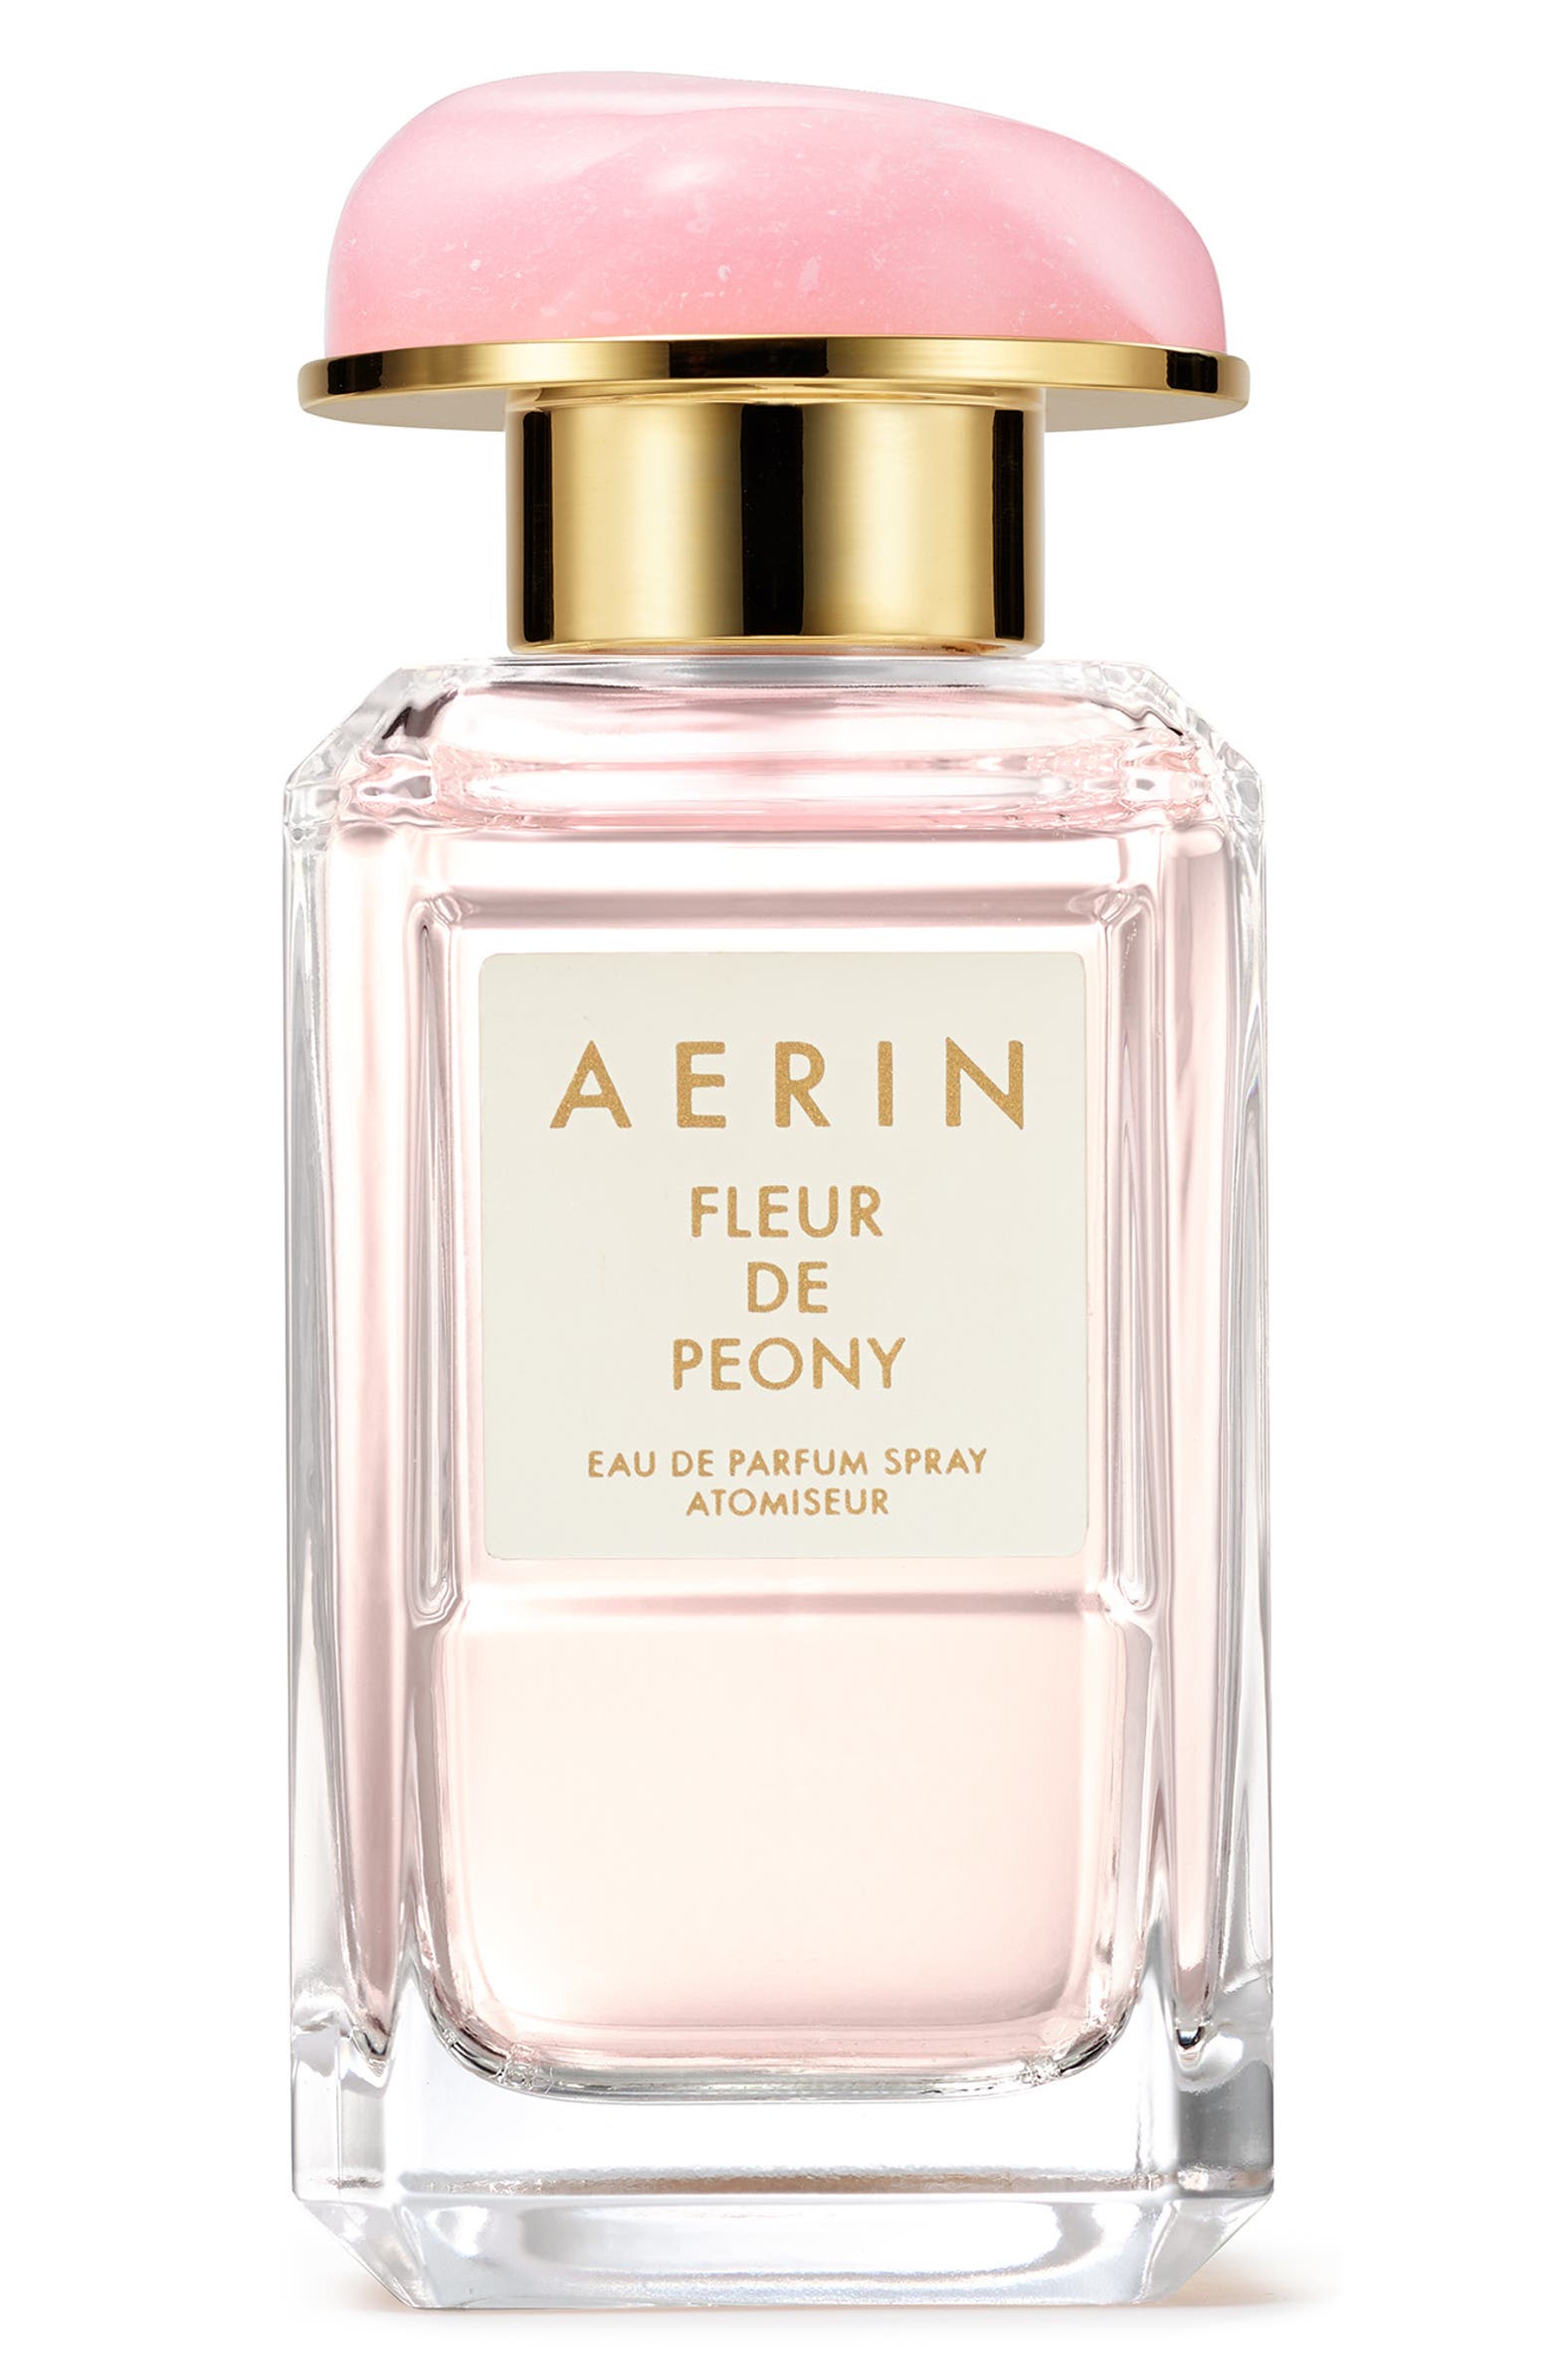 AERIN Beauty Fleur de Peony Eau de Parfum